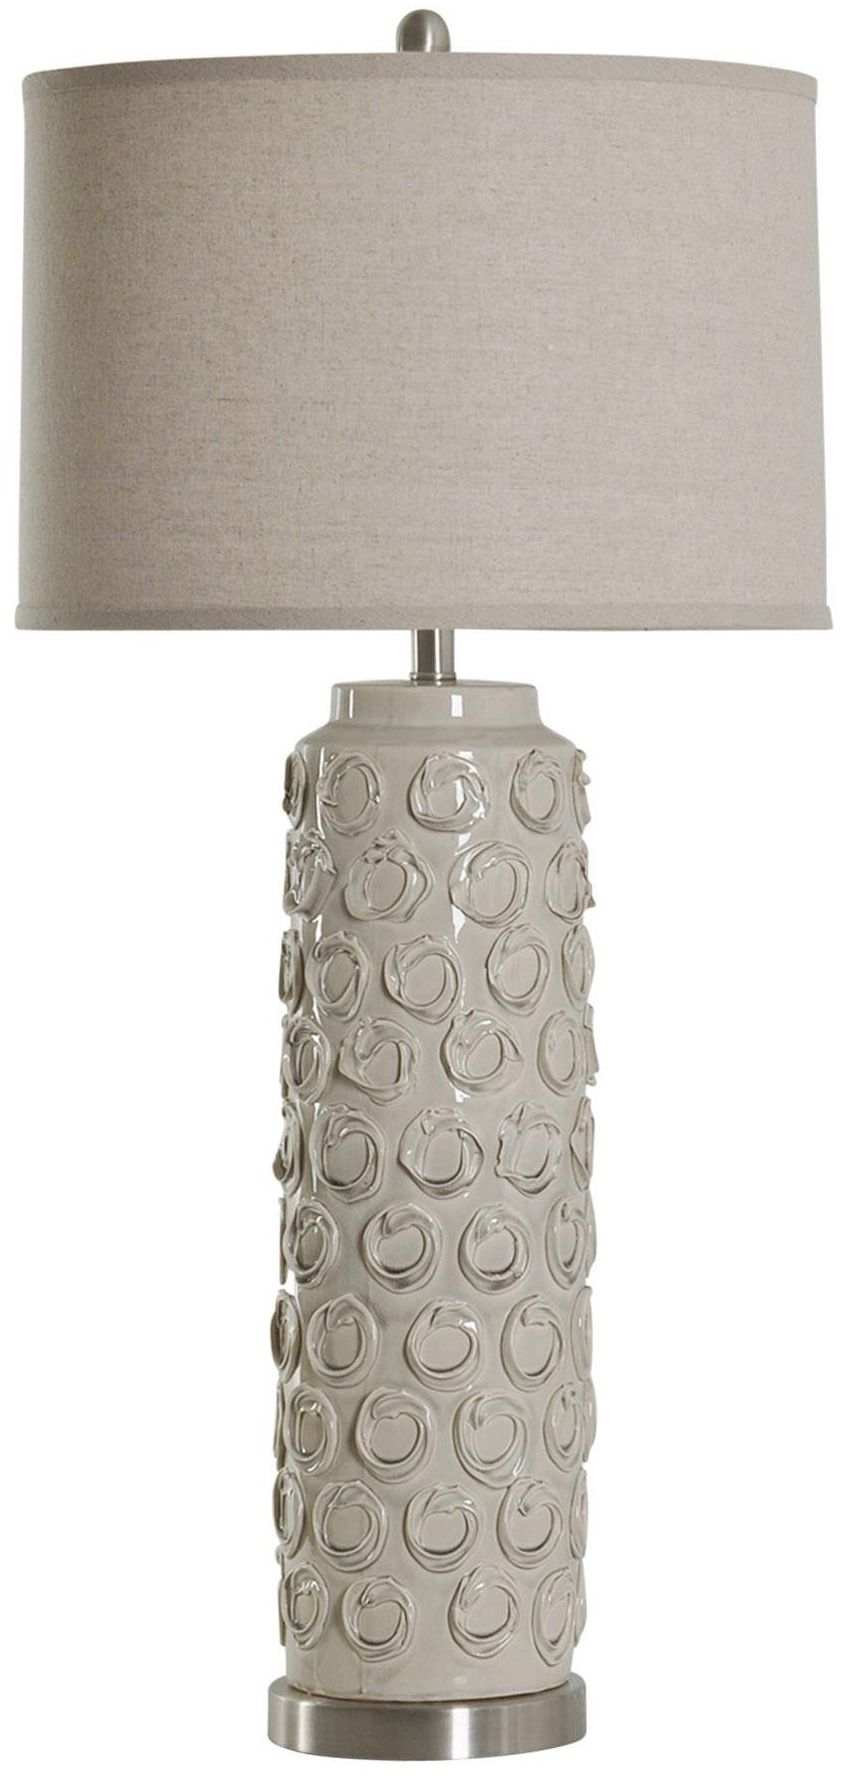 StyleCraft Ceramic Lamp